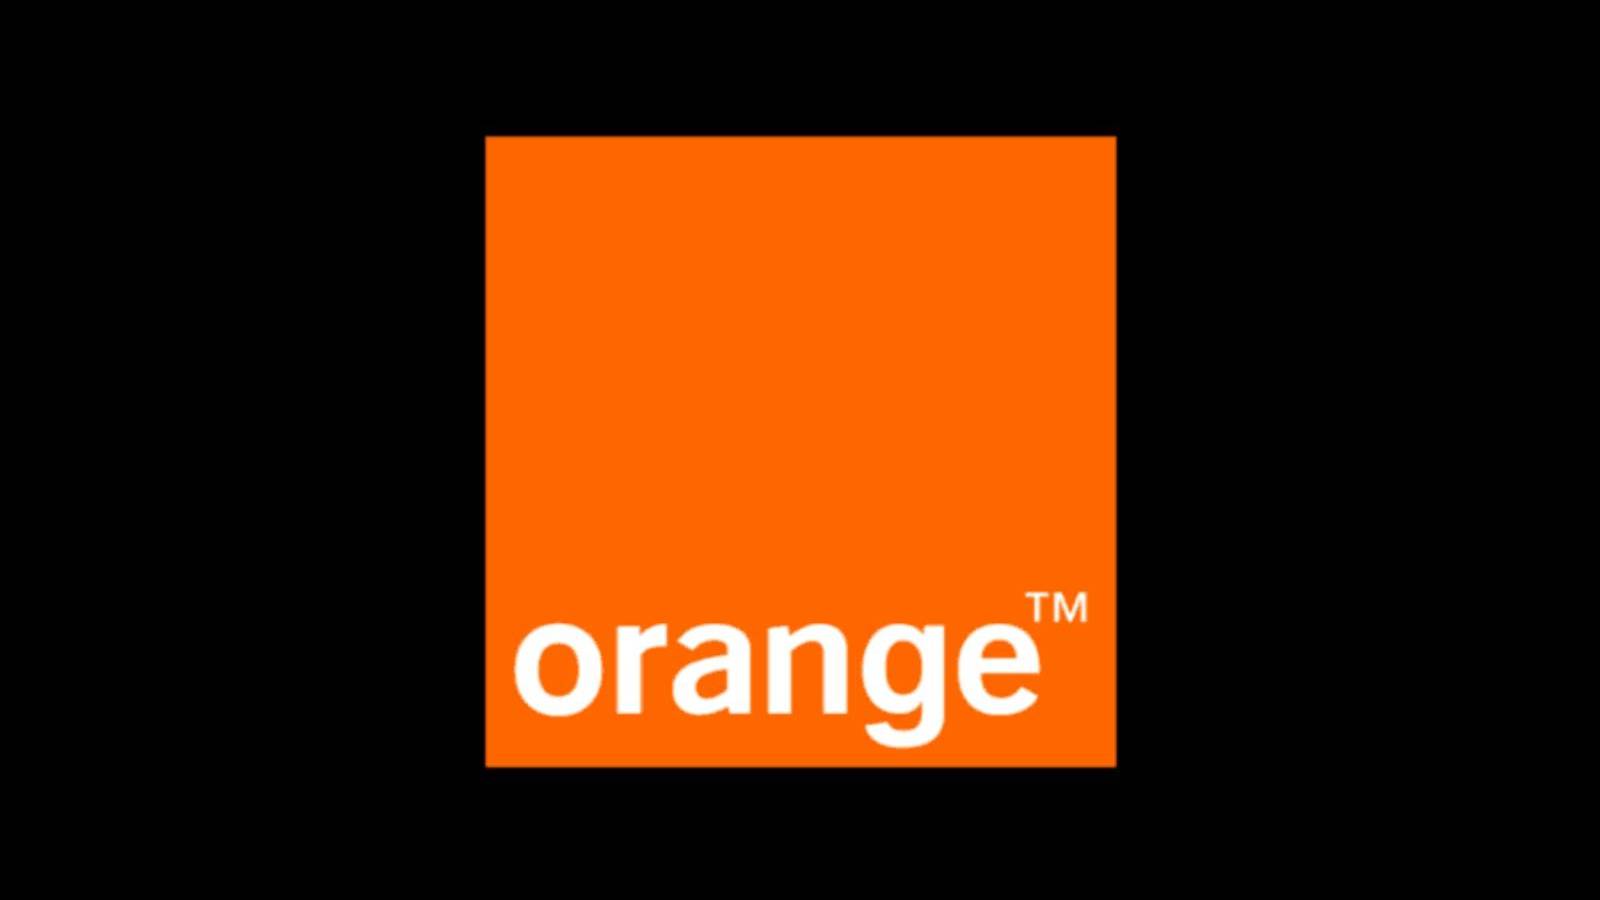 advantageous orange